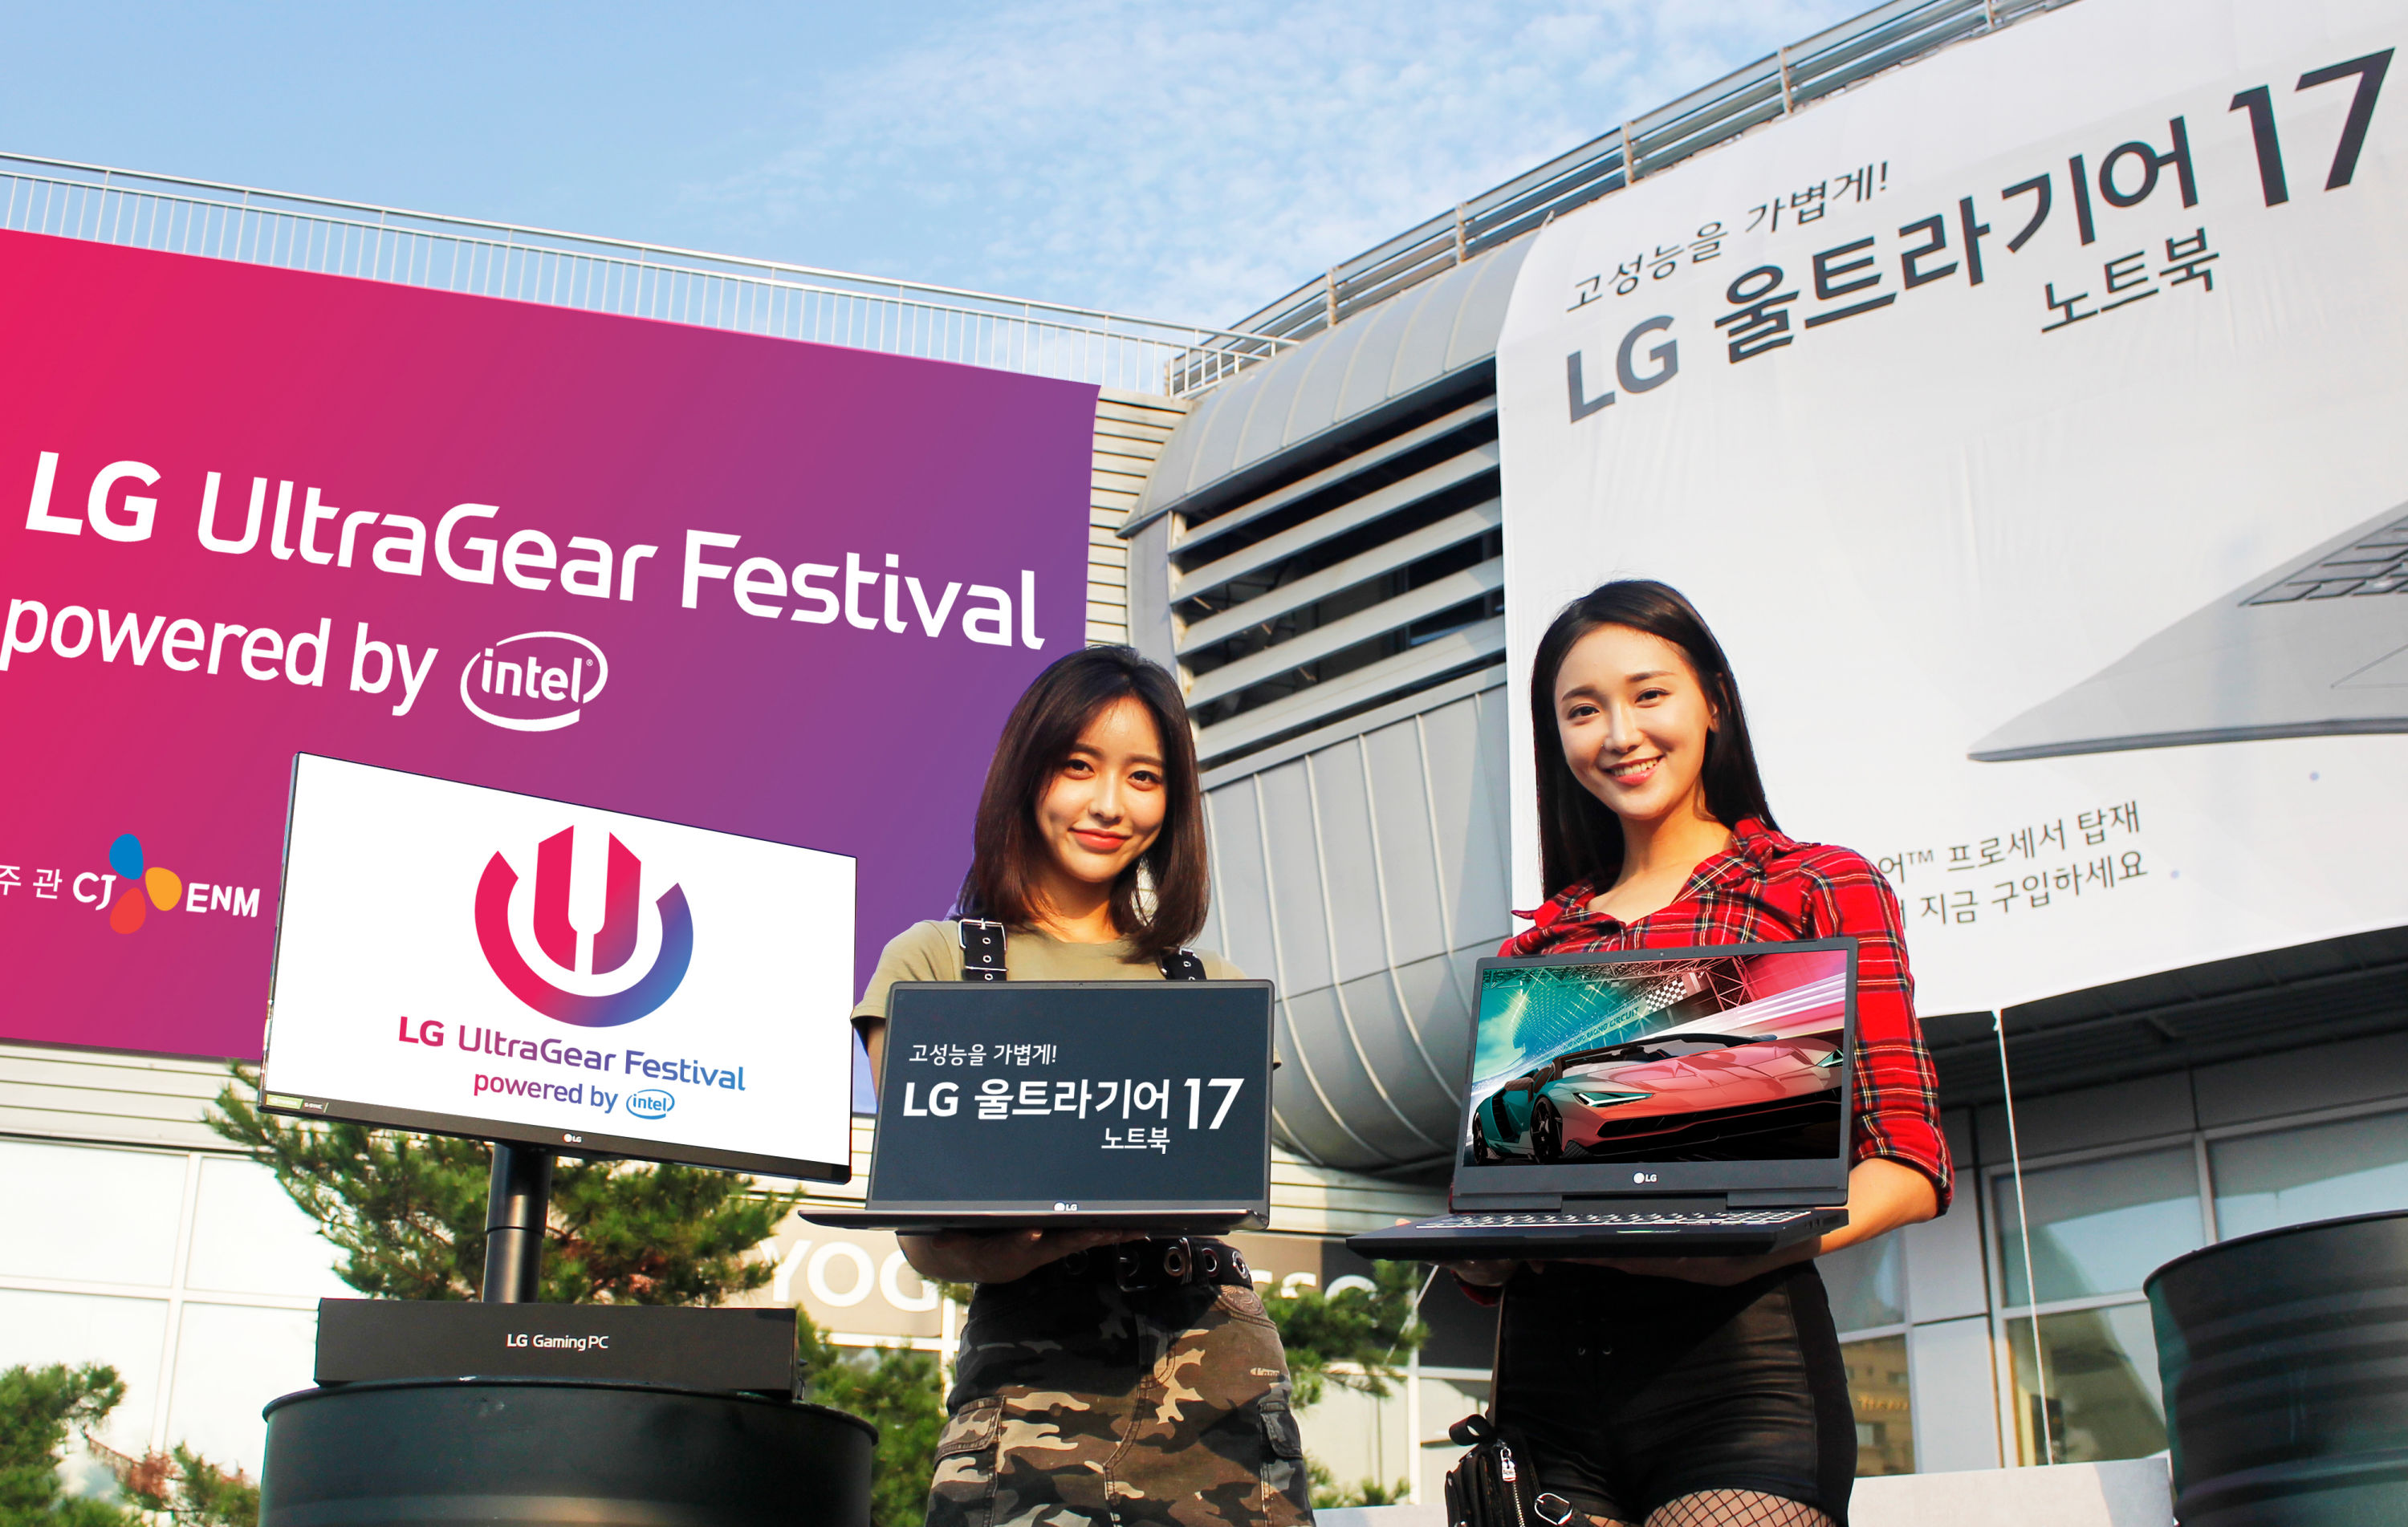  모델들이 서울 장충체육관에서 이달 31일부터 열리는 'LG 울트라기어 페스티벌' 행사장 앞에서 내달 9일 출시 예정인 'LG 울트라기어 17' 노트북(모델명:17U790)을 들고 포즈를 취하고 있다. 